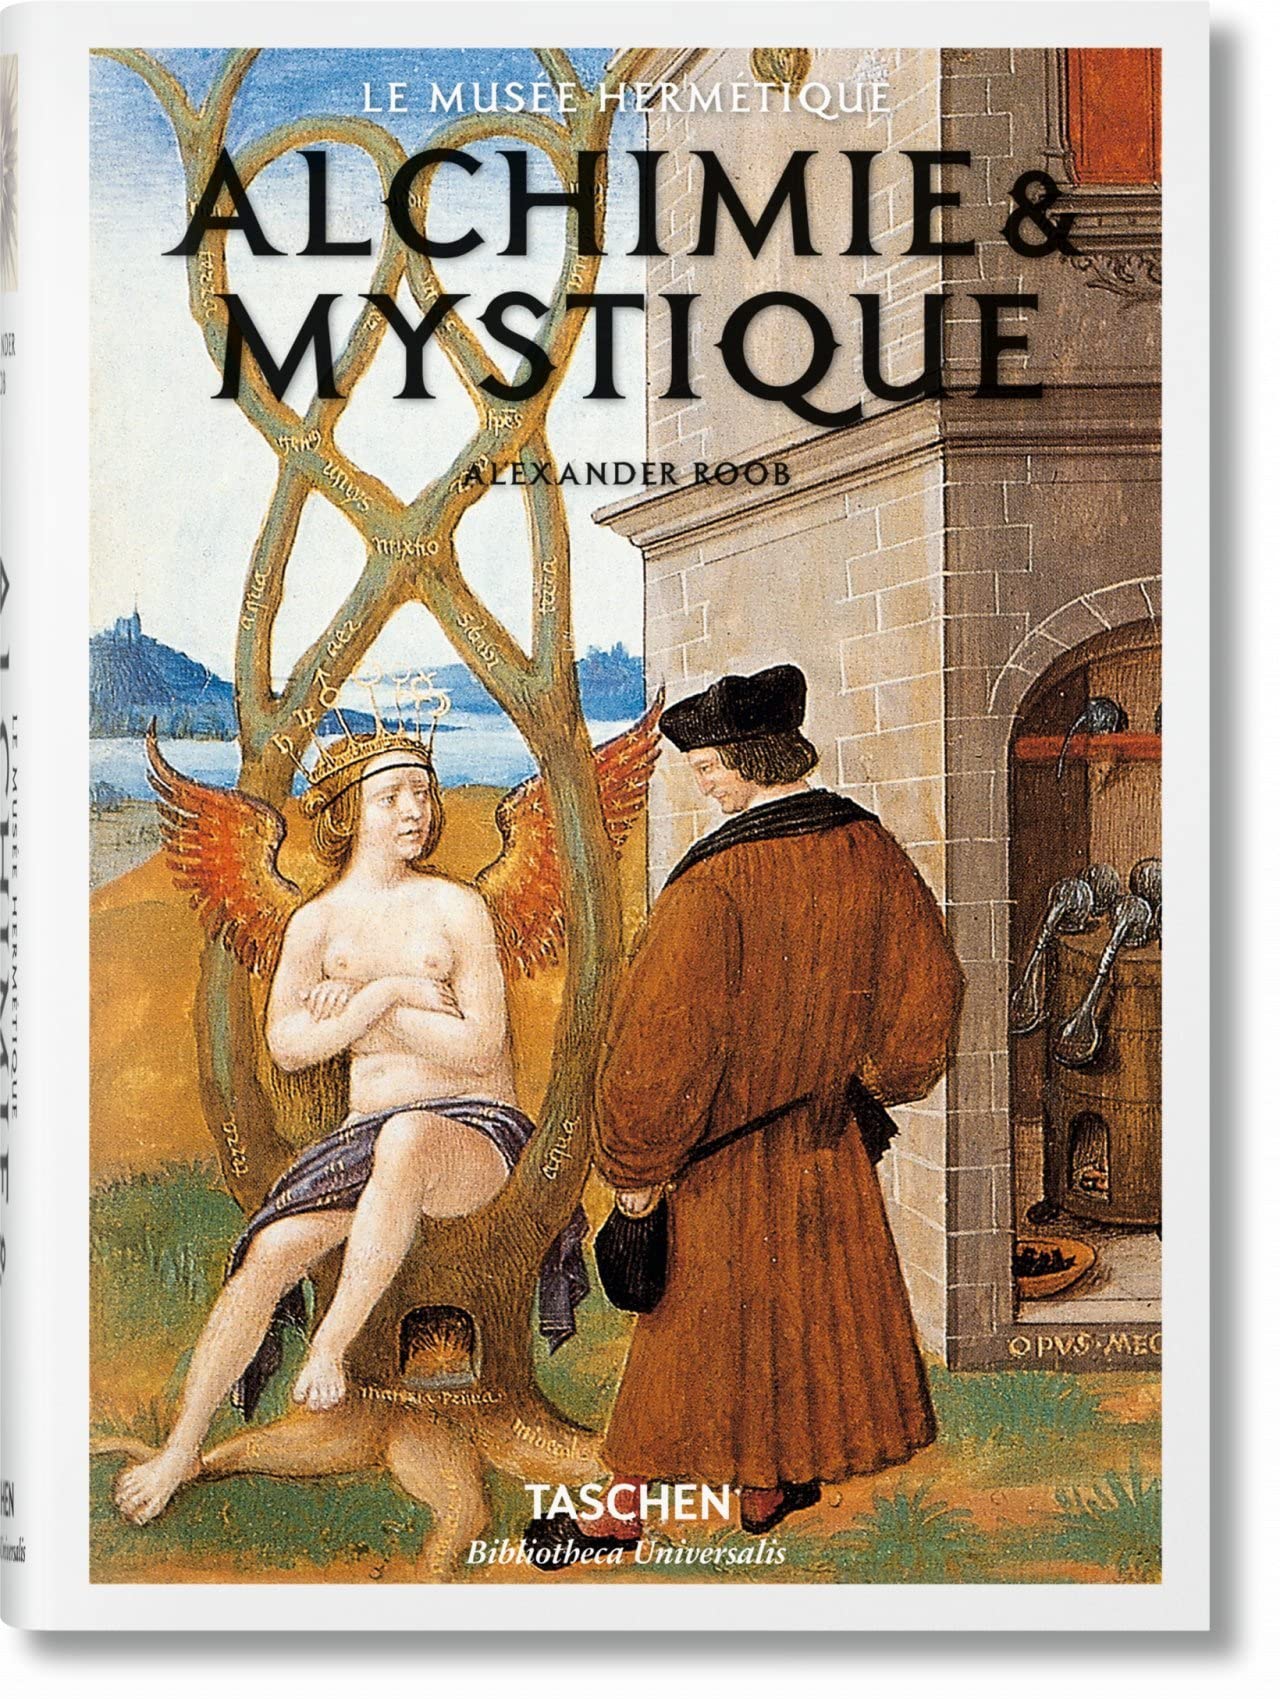 Libri Alexander Roob - Alchimie & Mystique (French Edition) NUOVO SIGILLATO SUBITO DISPONIBILE